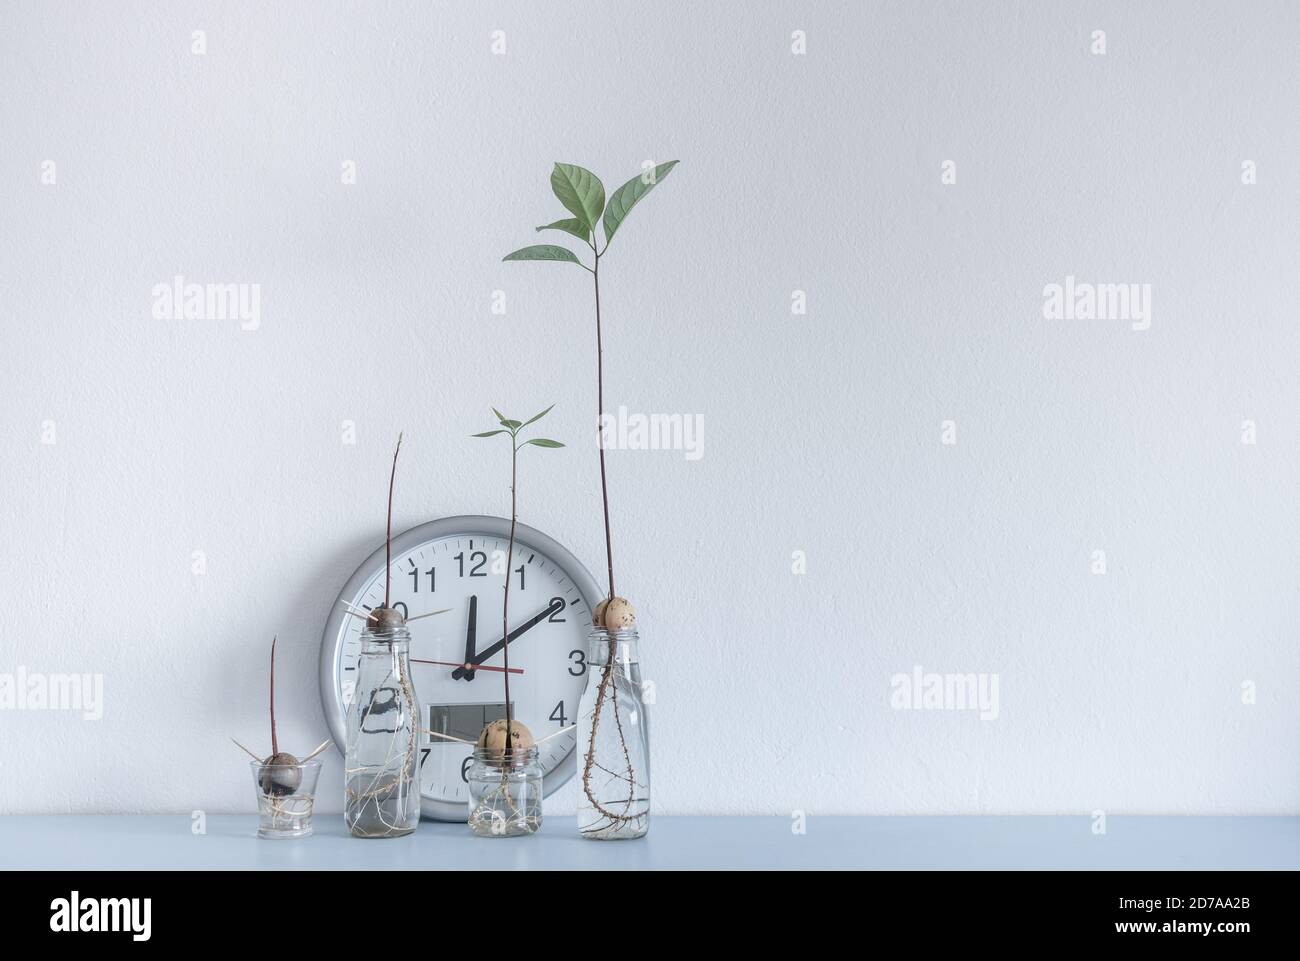 Bild zeigt Uhr und Avocado Samen/Stein wachsen in Wasser auf Home Regal. Stockfoto